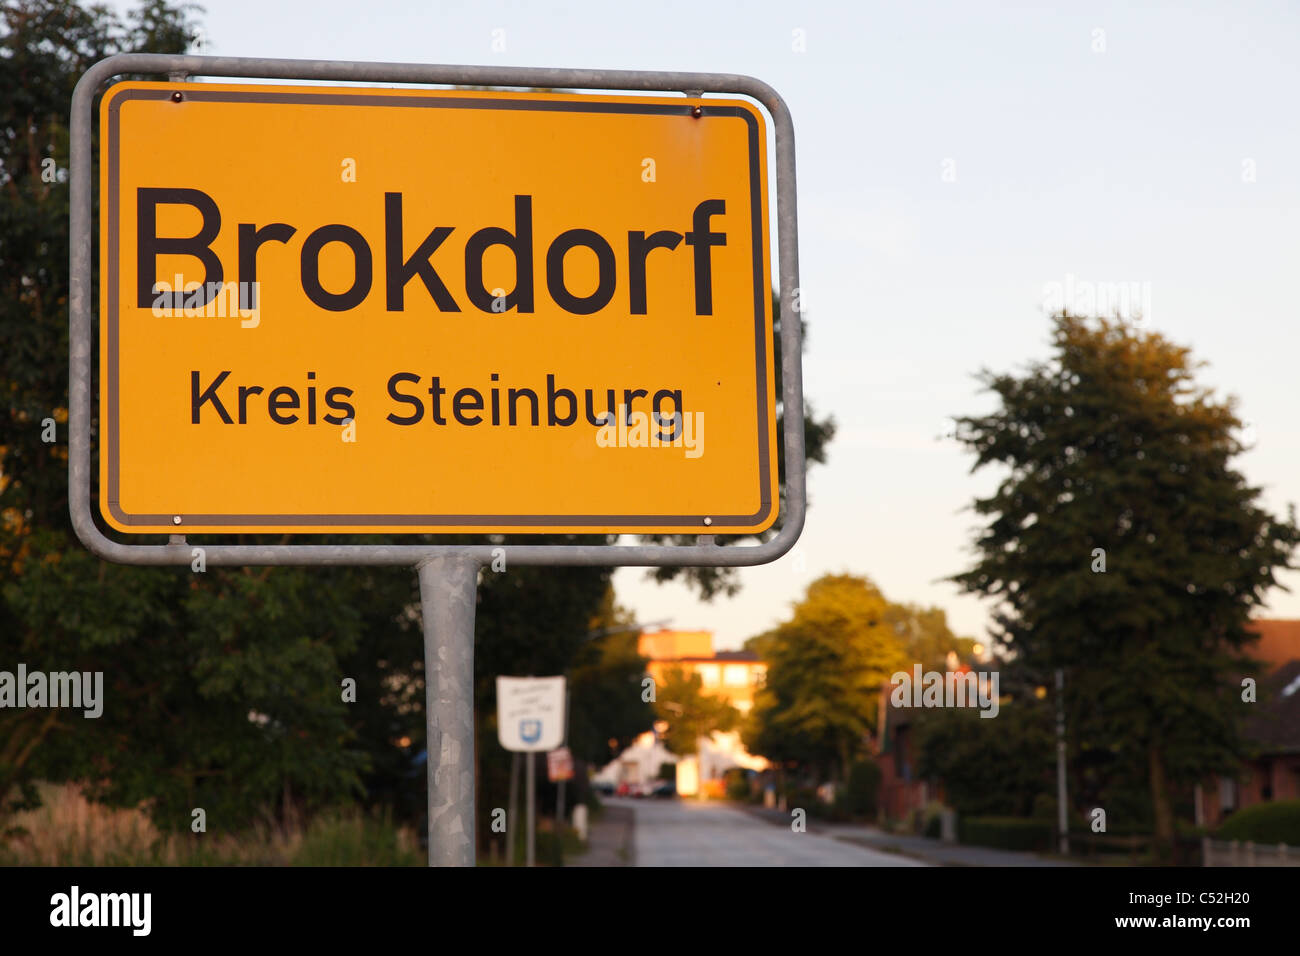 Brokdorf sign; Ortseingangsschild von Brokdorf Stock Photo